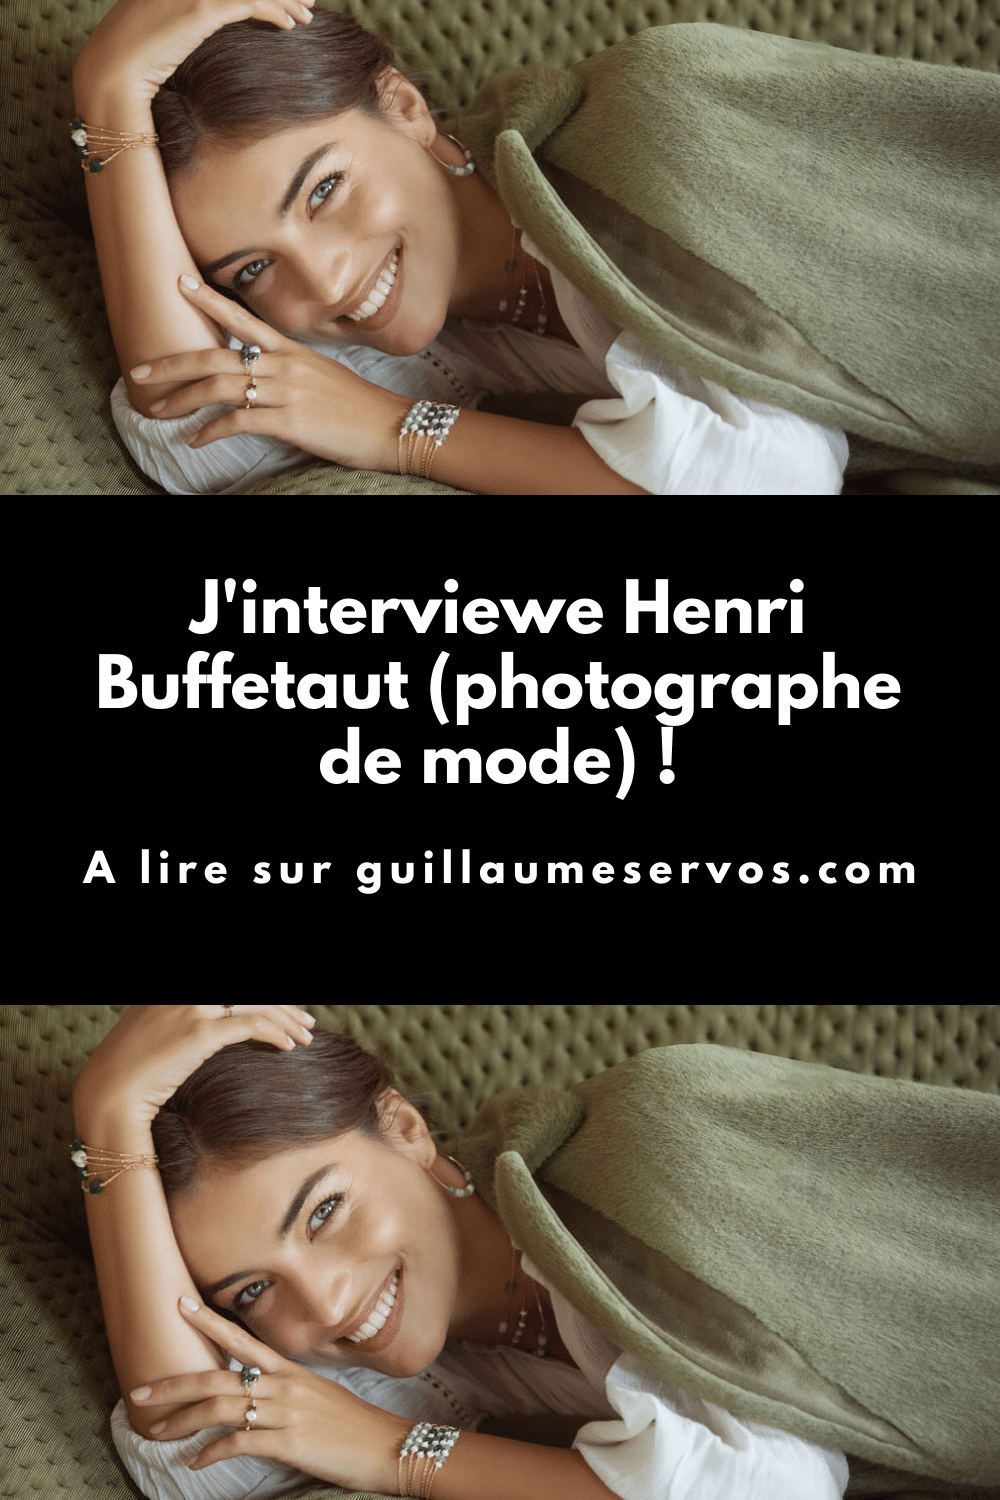 Découvre mon interview avec Henri Buffetaut, photographe de mode. Son rapport à la photographie, aux réseaux sociaux et au voyage.